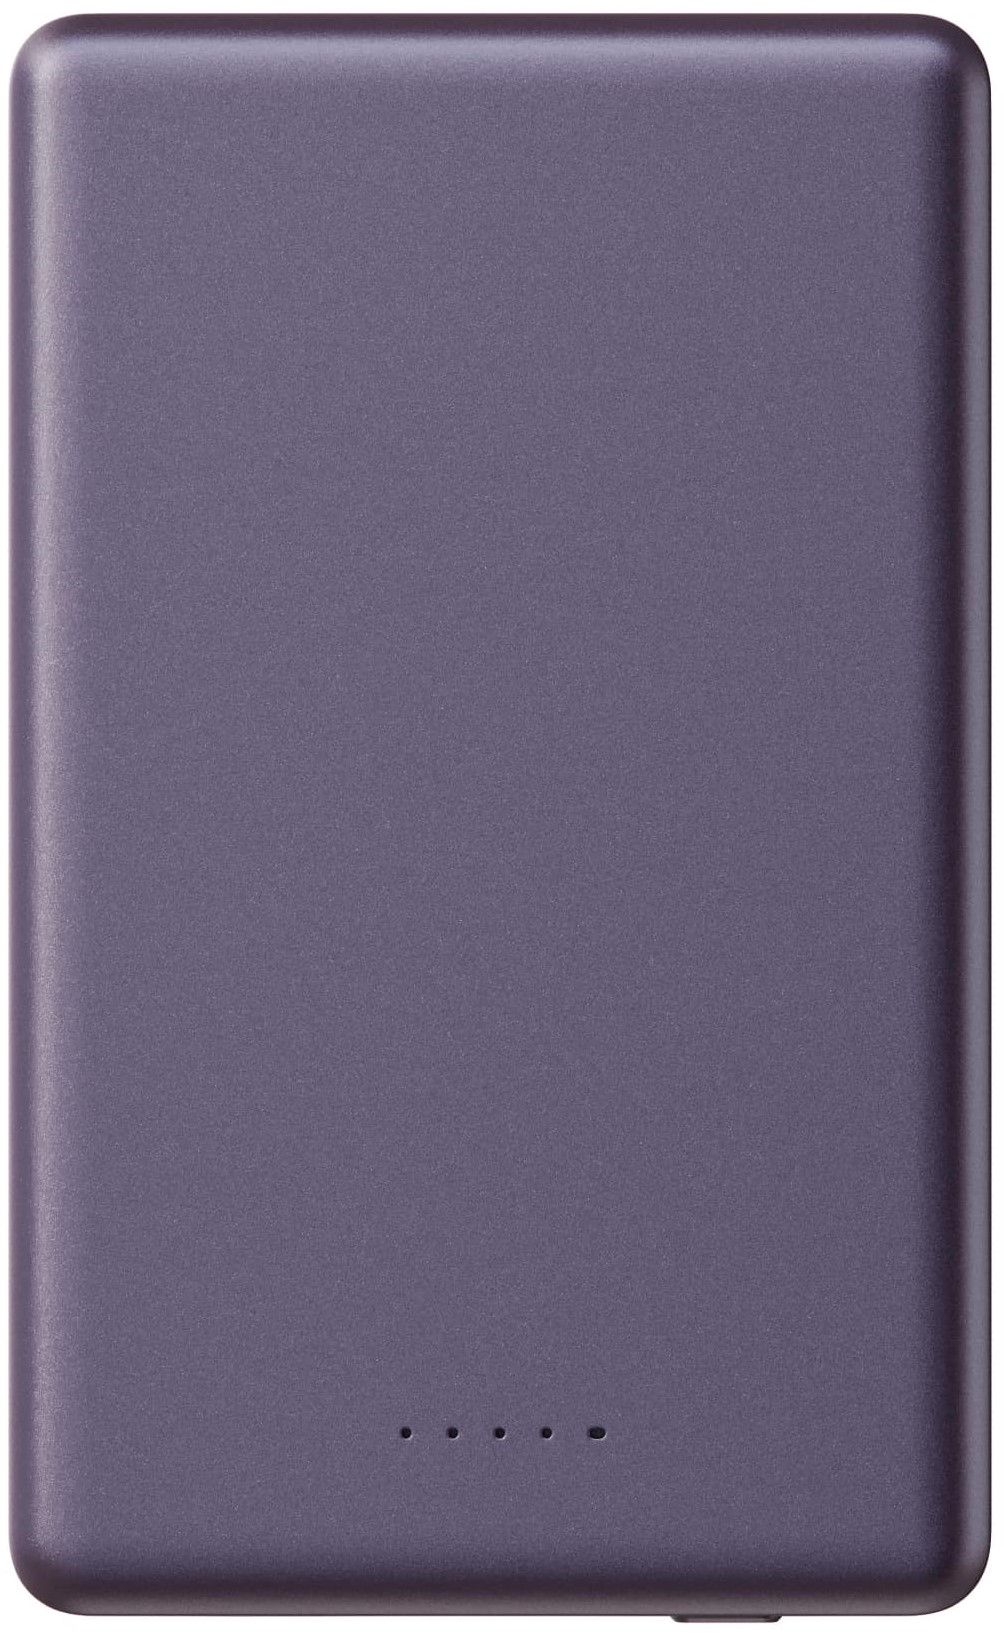 Портативное ЗУ Breaking P220 5 000 mAh фиолетовый